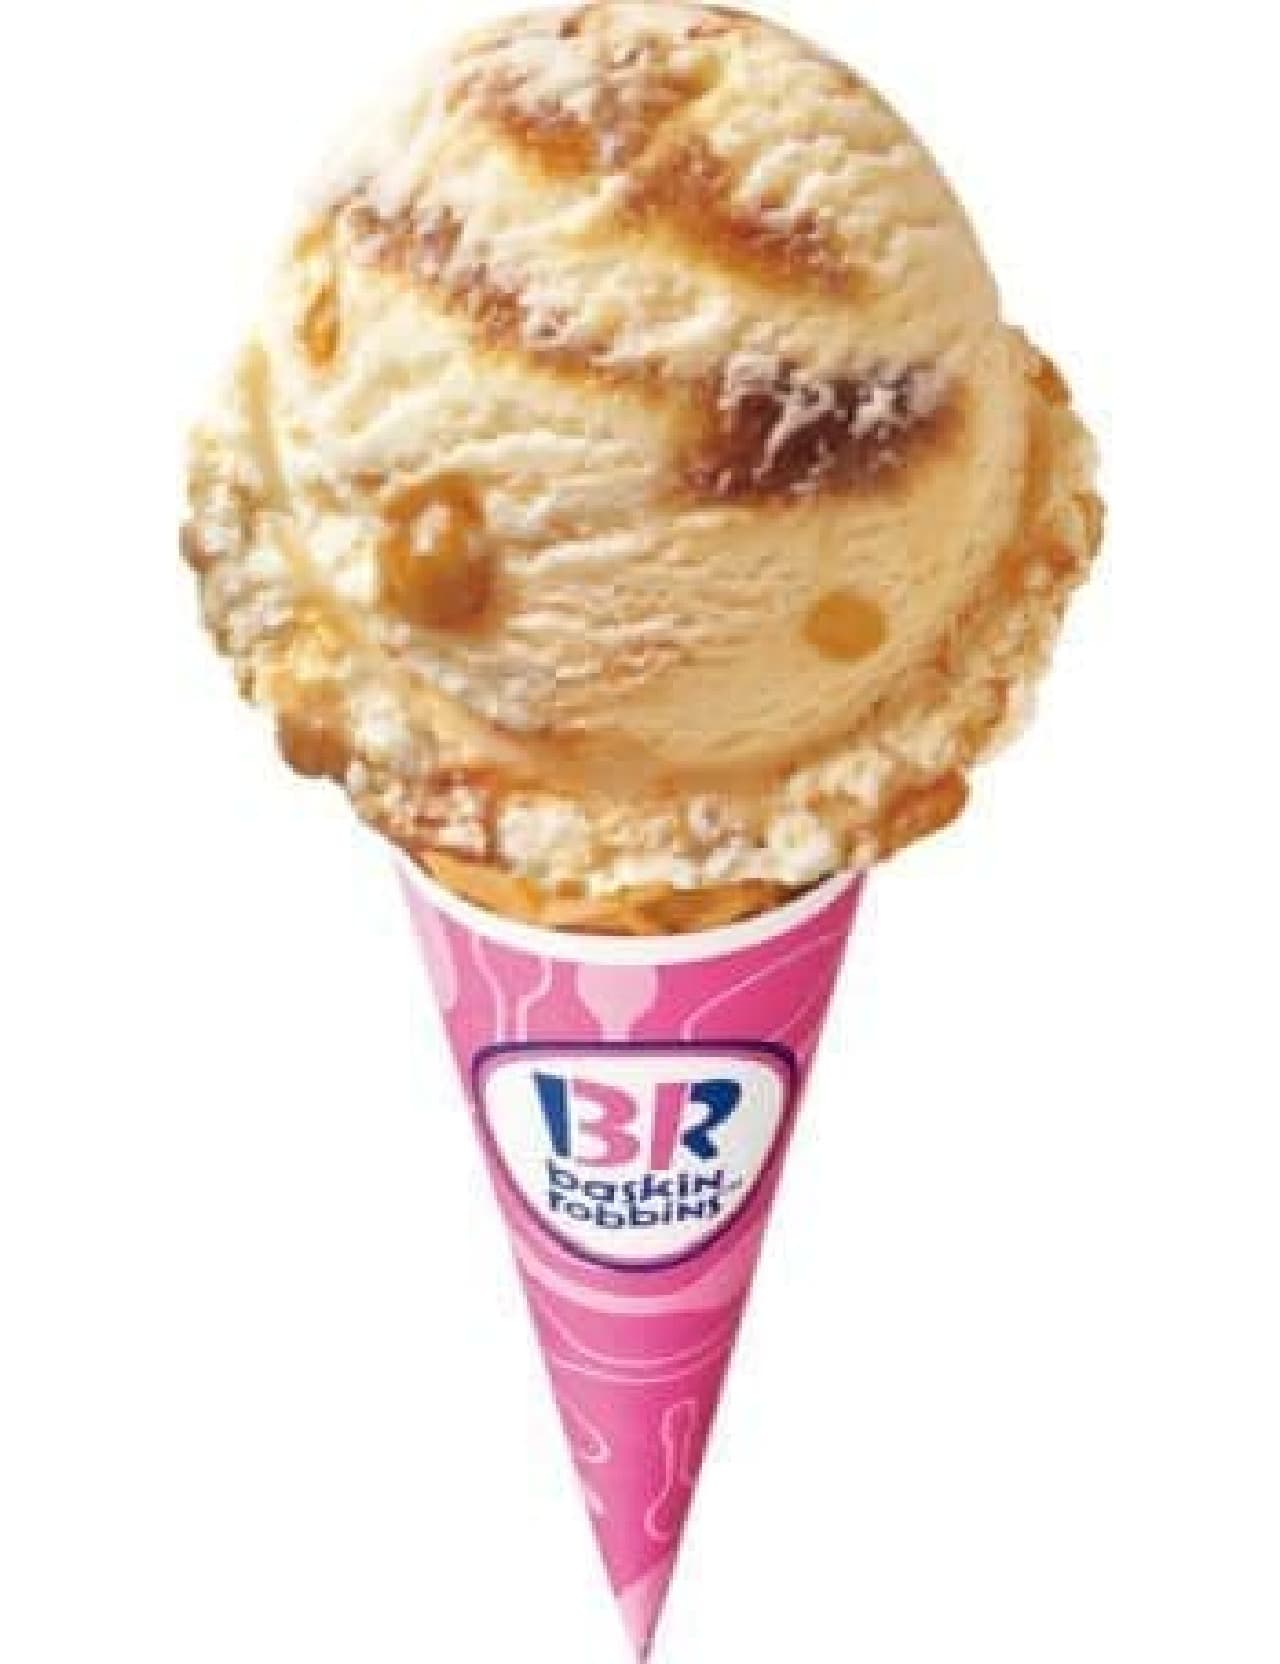 「キャラメルクランチキャンディ」はニュージーランドのアイスクリーム「ホーキーポーキー」をサーティワン風にアレンジしたフレーバー